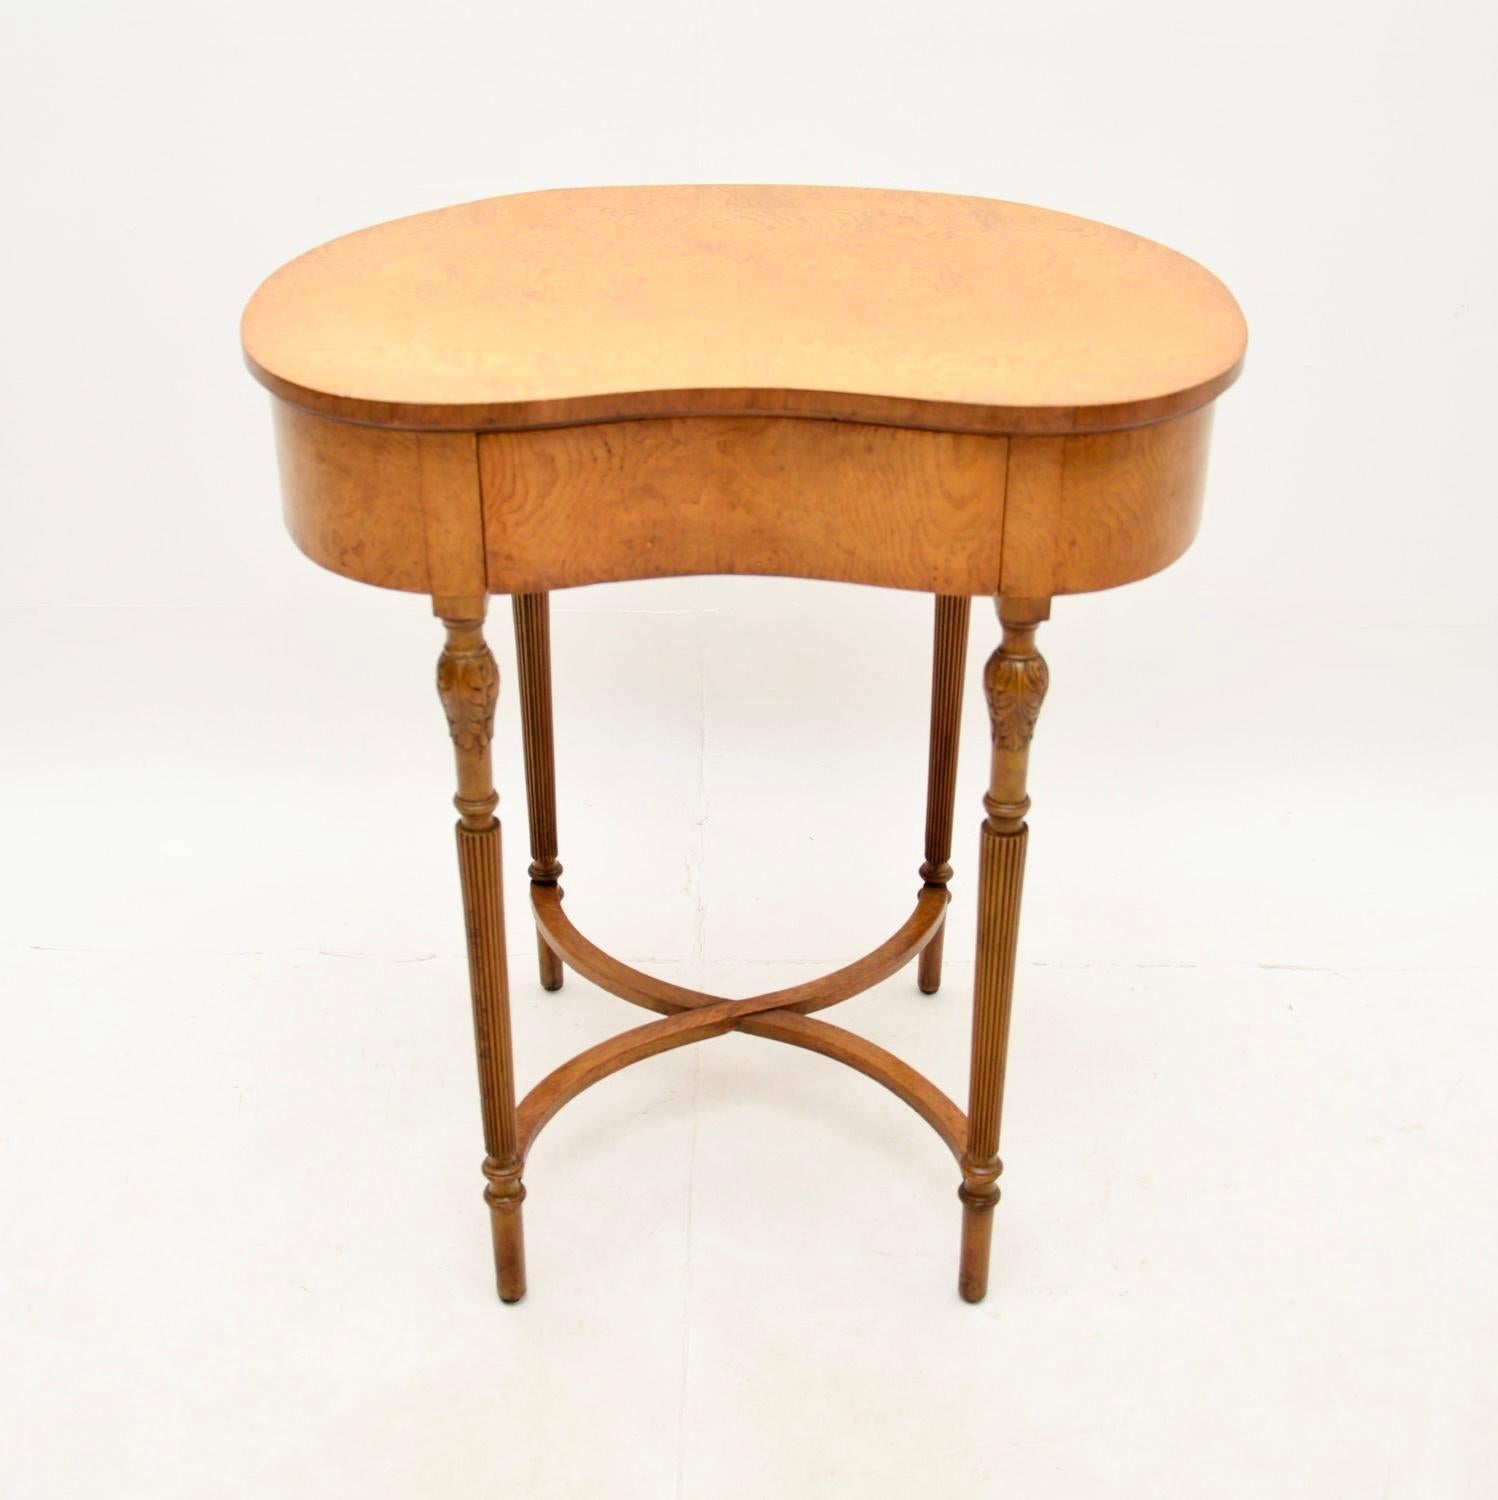 Eine ganz ungewöhnliche und schöne antike Rüster Niere Form Seite / Schreibtisch. Sie wurde in England hergestellt und stammt aus den 1920-30er Jahren.

Es ist von hervorragender Qualität, die nierenförmige Platte hat eine einzelne Schublade und